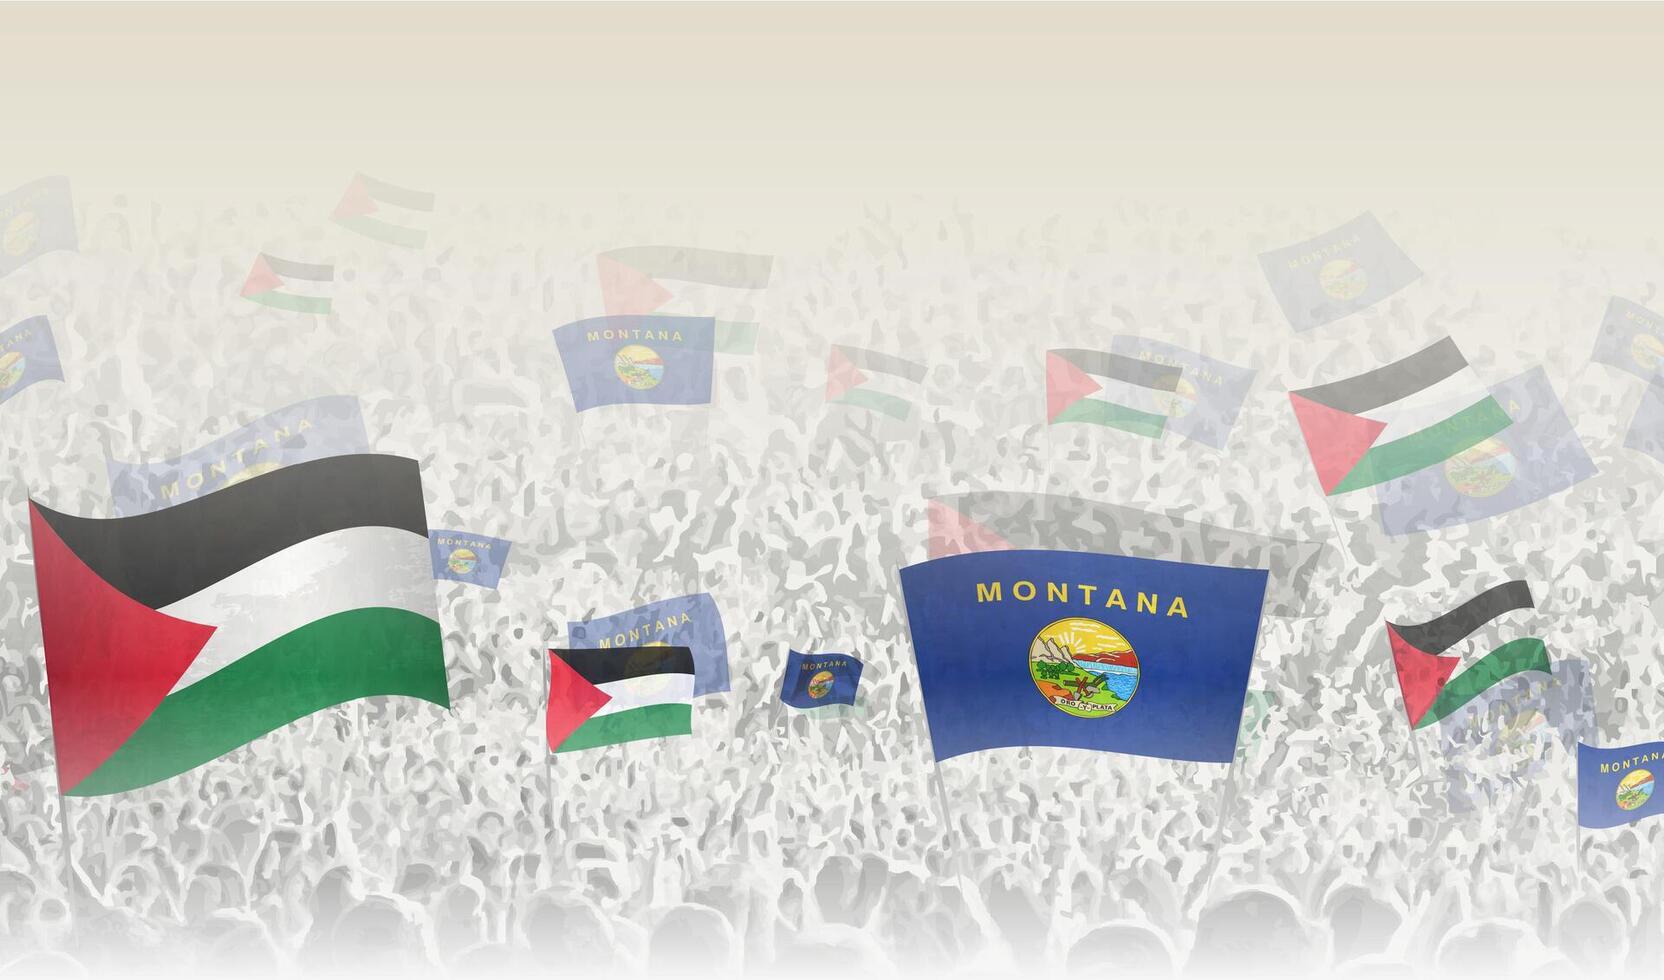 Palestine et Montana drapeaux dans une foule de applaudissement personnes. vecteur